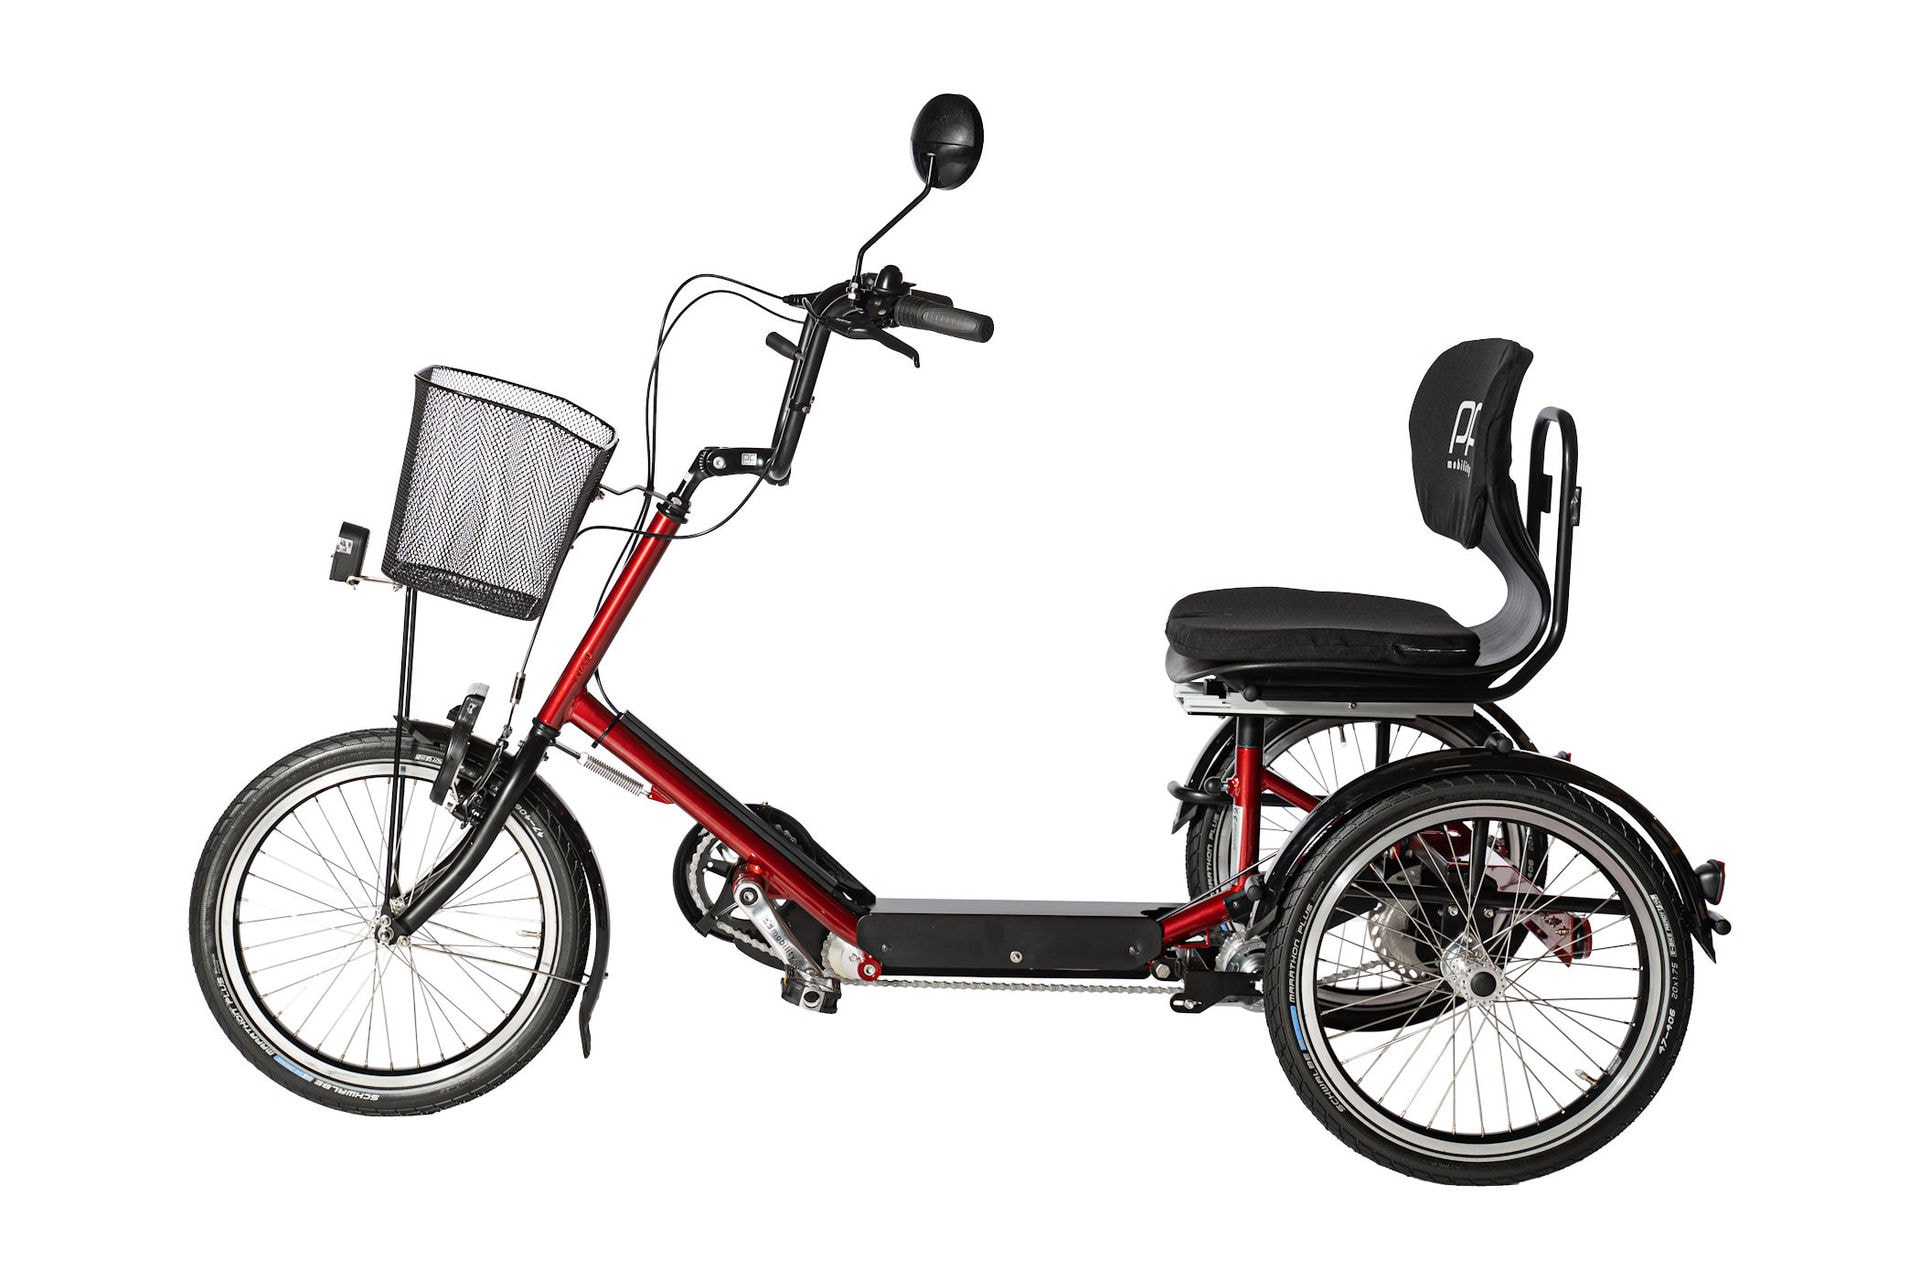 Karakter mave stamme Trehjulet handicapcykel - bliv selvhjulpen med frihed og mobilitet